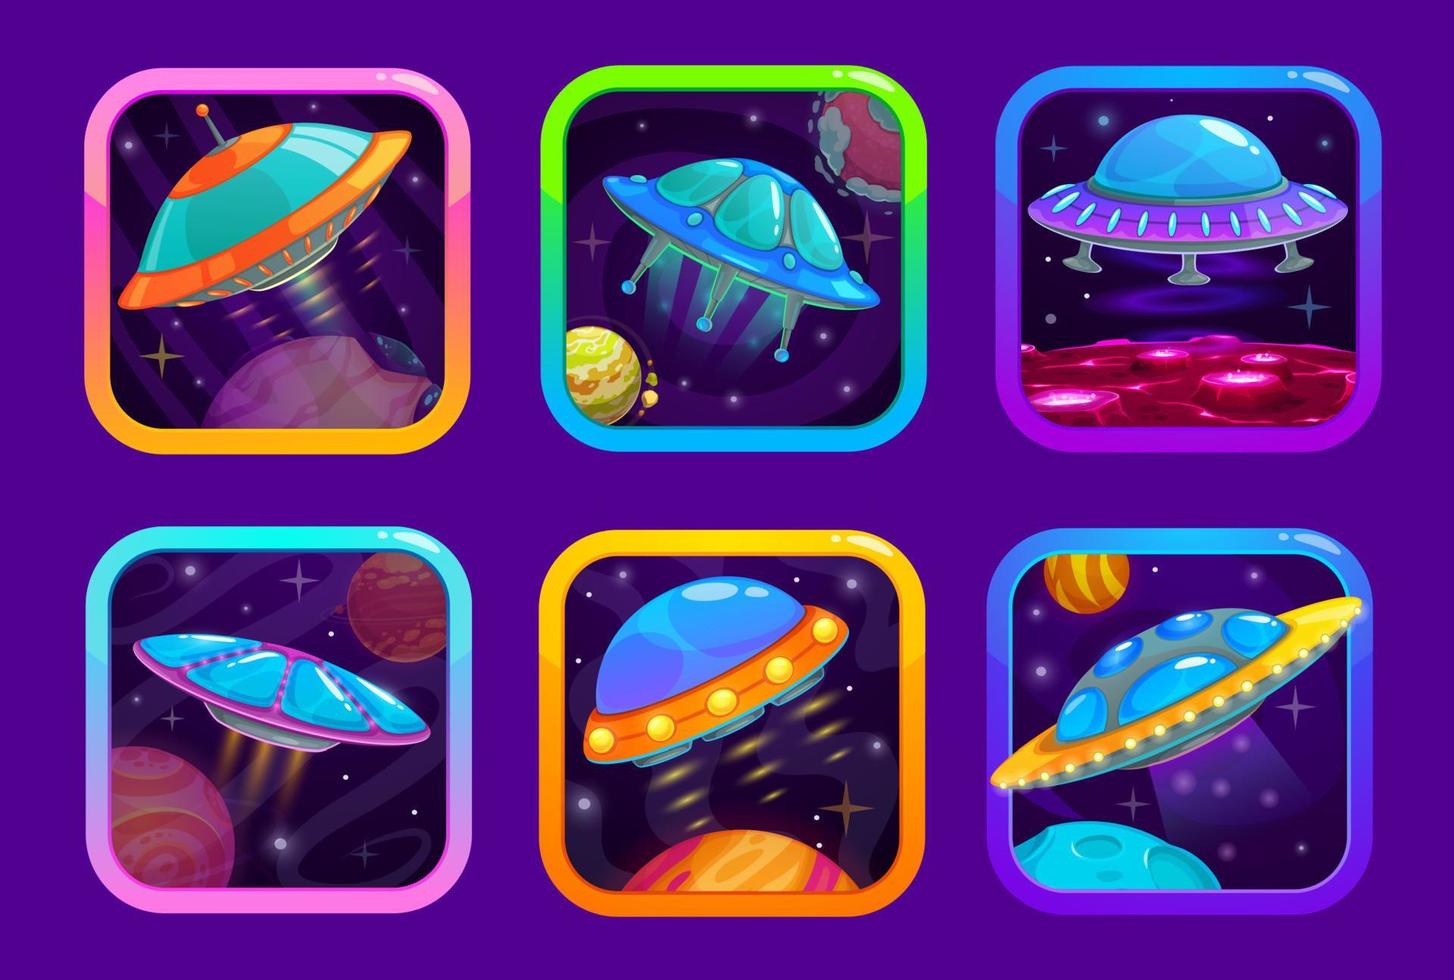 tekenfilm ruimte spel app pictogrammen met ufo ruimteschepen vector